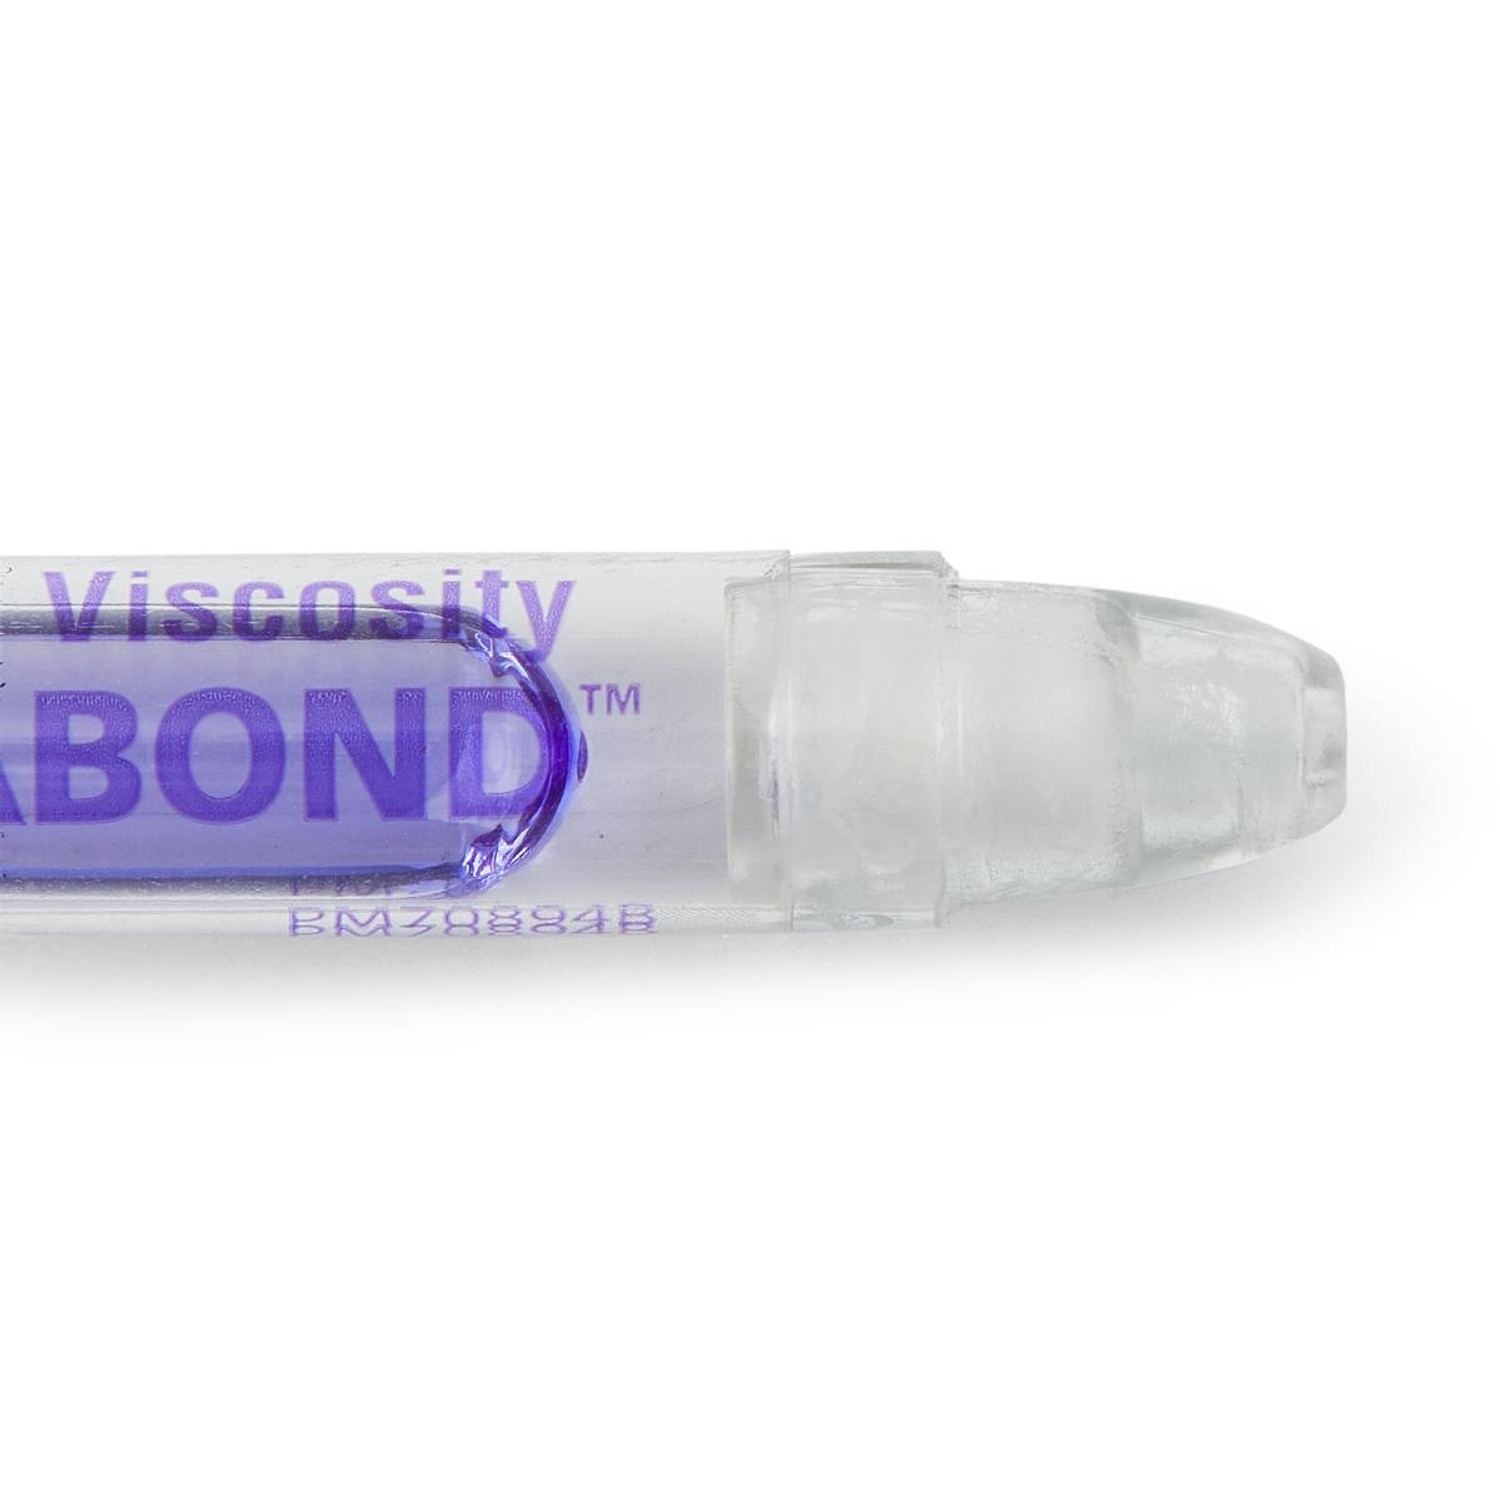 DERMABOND Mini Topical Skin Adhesive - 0.36-mL Tube